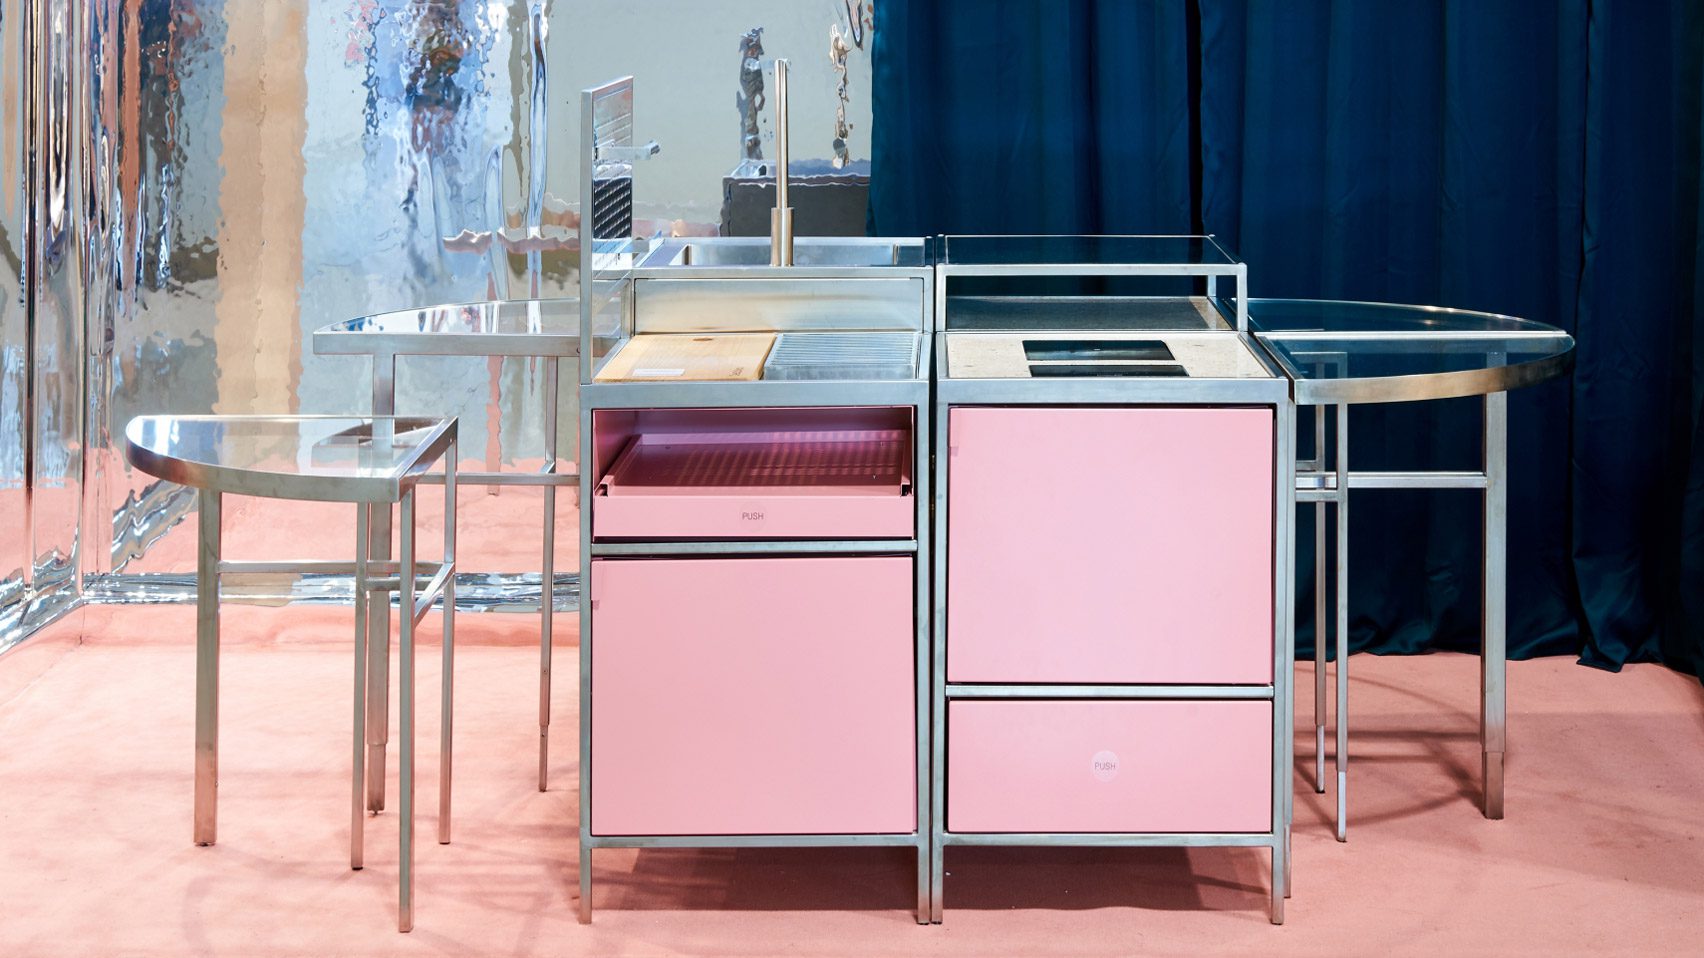 Нтайана Харалампус проектирует модульную кухню, которая впишется в любое пространство